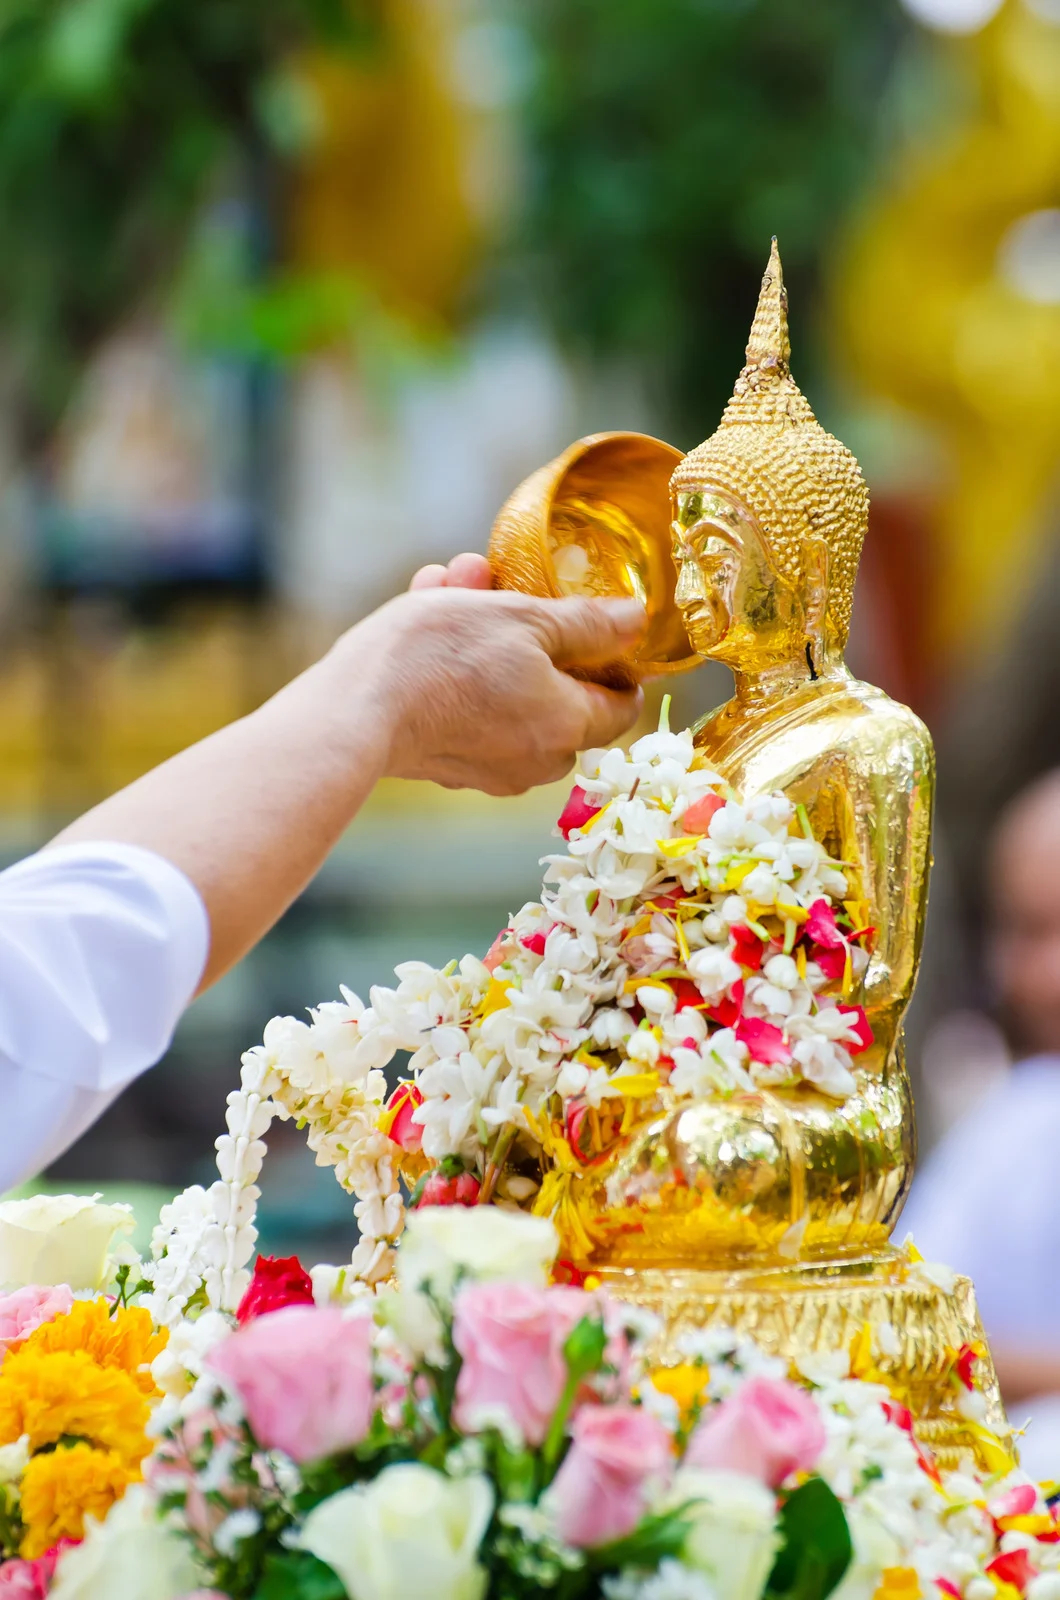 Tắm Phật và té nước để cầu may mắn là phong tục truyền thống trong ngày này